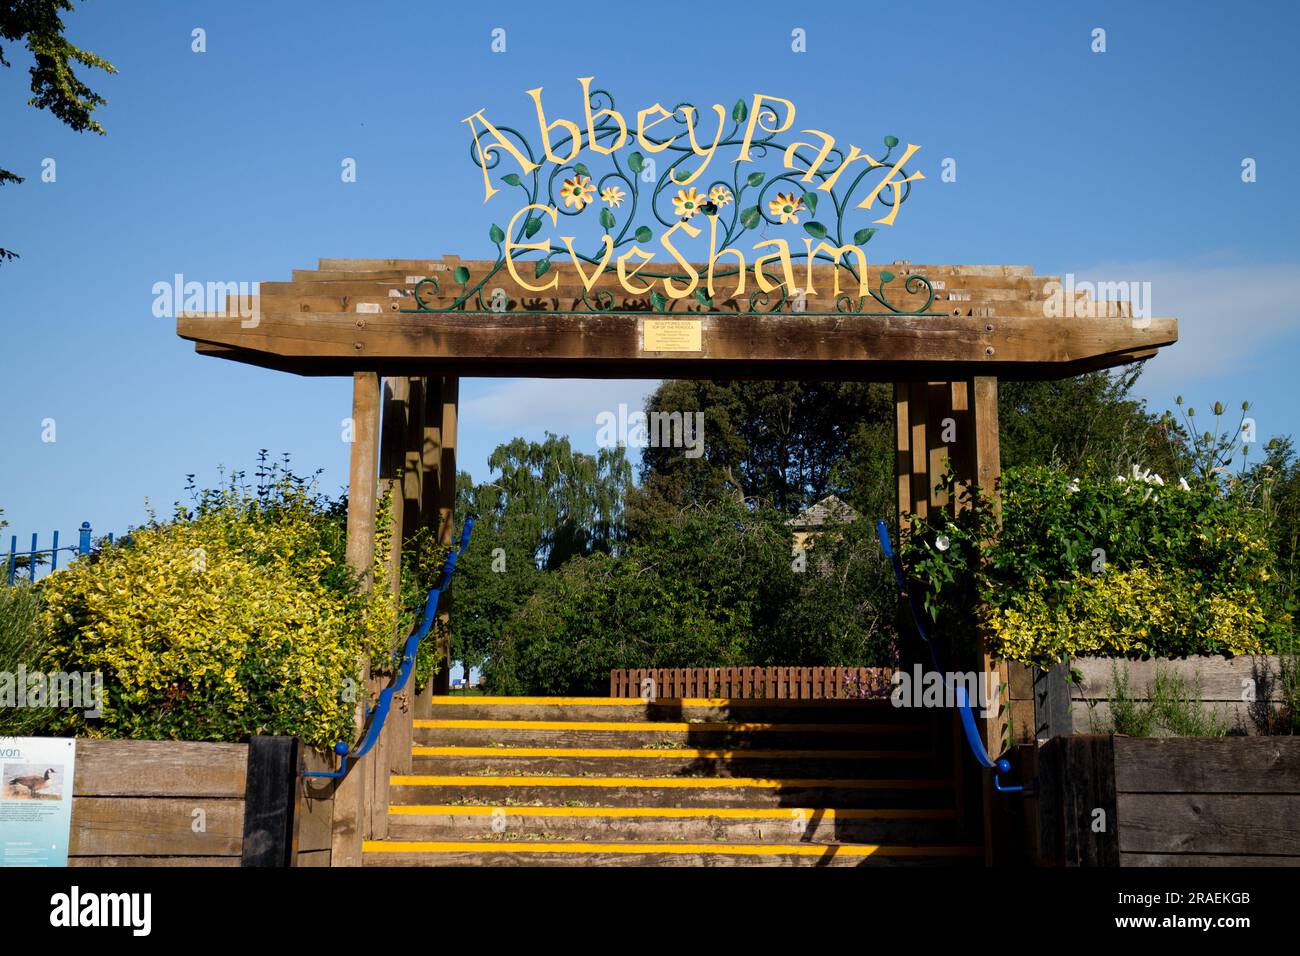 Pergola and sign, Abbey Park, Evesham, Worcestershire, England, UK Stock Photo